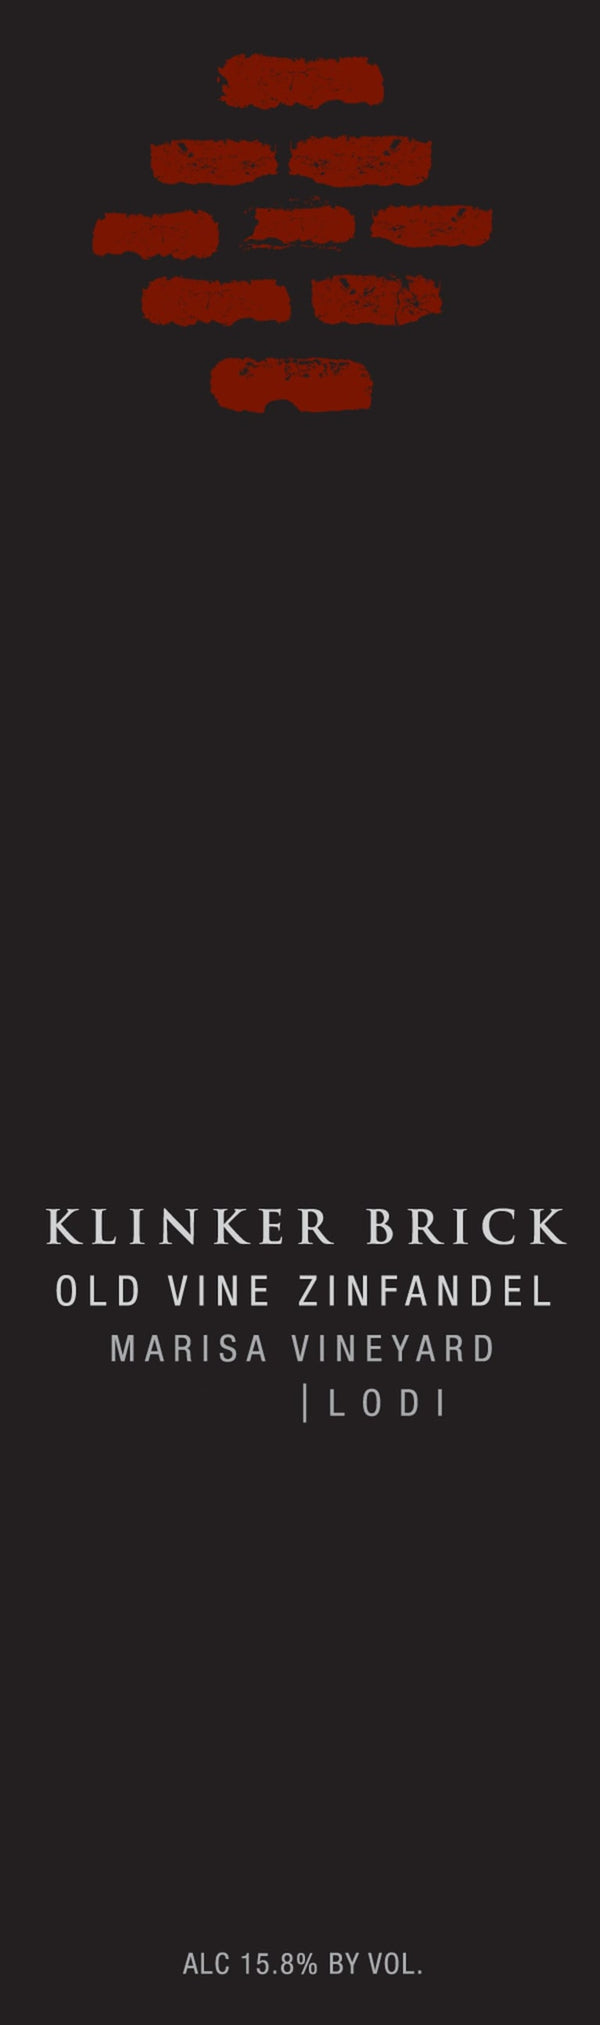 Klinker Brick Zinfandel Marisa Vineyard